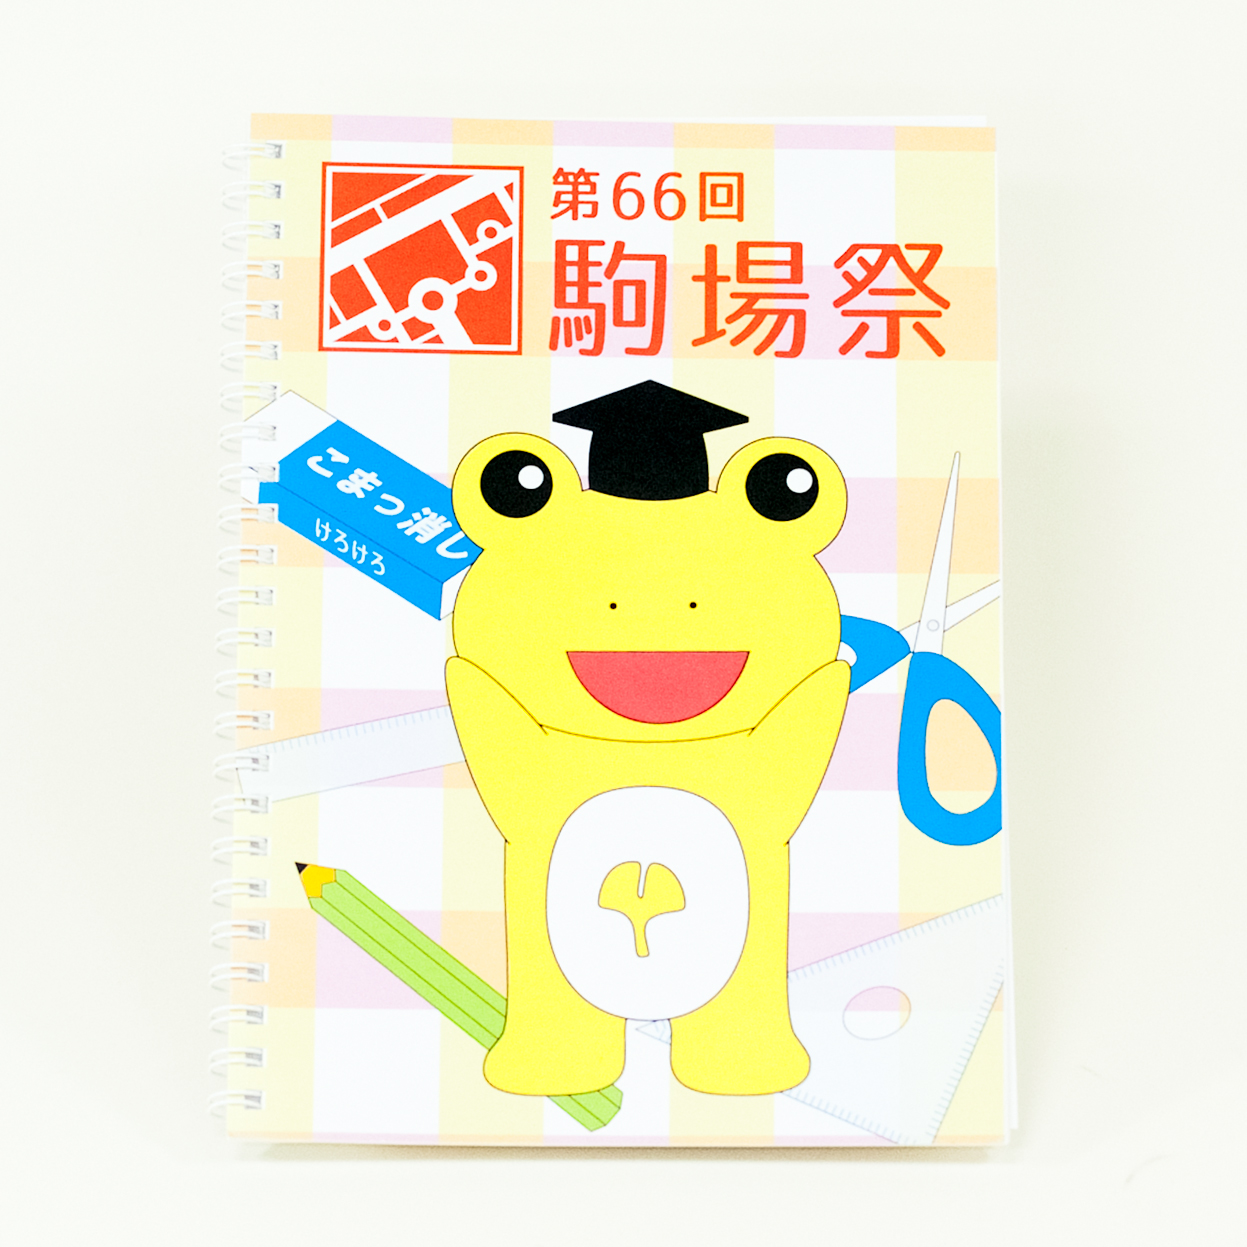 「東京大学駒場祭委員会 様」製作のオリジナルノート